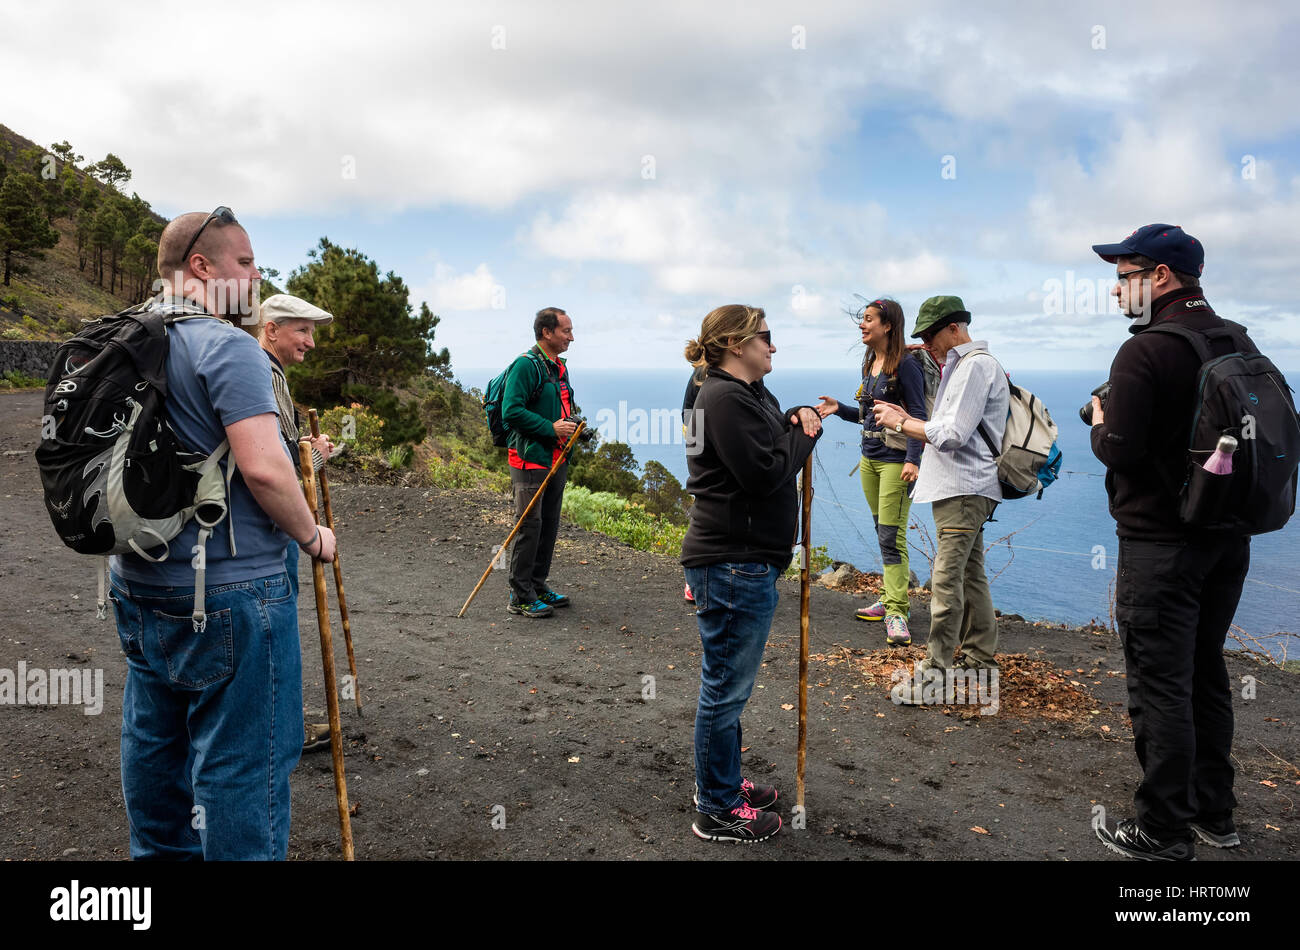 Sentier de randonnée à Fuencaliente. La Palma. Les touristes s'arrêter pour admirer la vue depuis le côté de la montagne donnant sur la mer. Il s'agit d'un jour brumeux lumineux avec des nuages en mouvement rapide. Banque D'Images